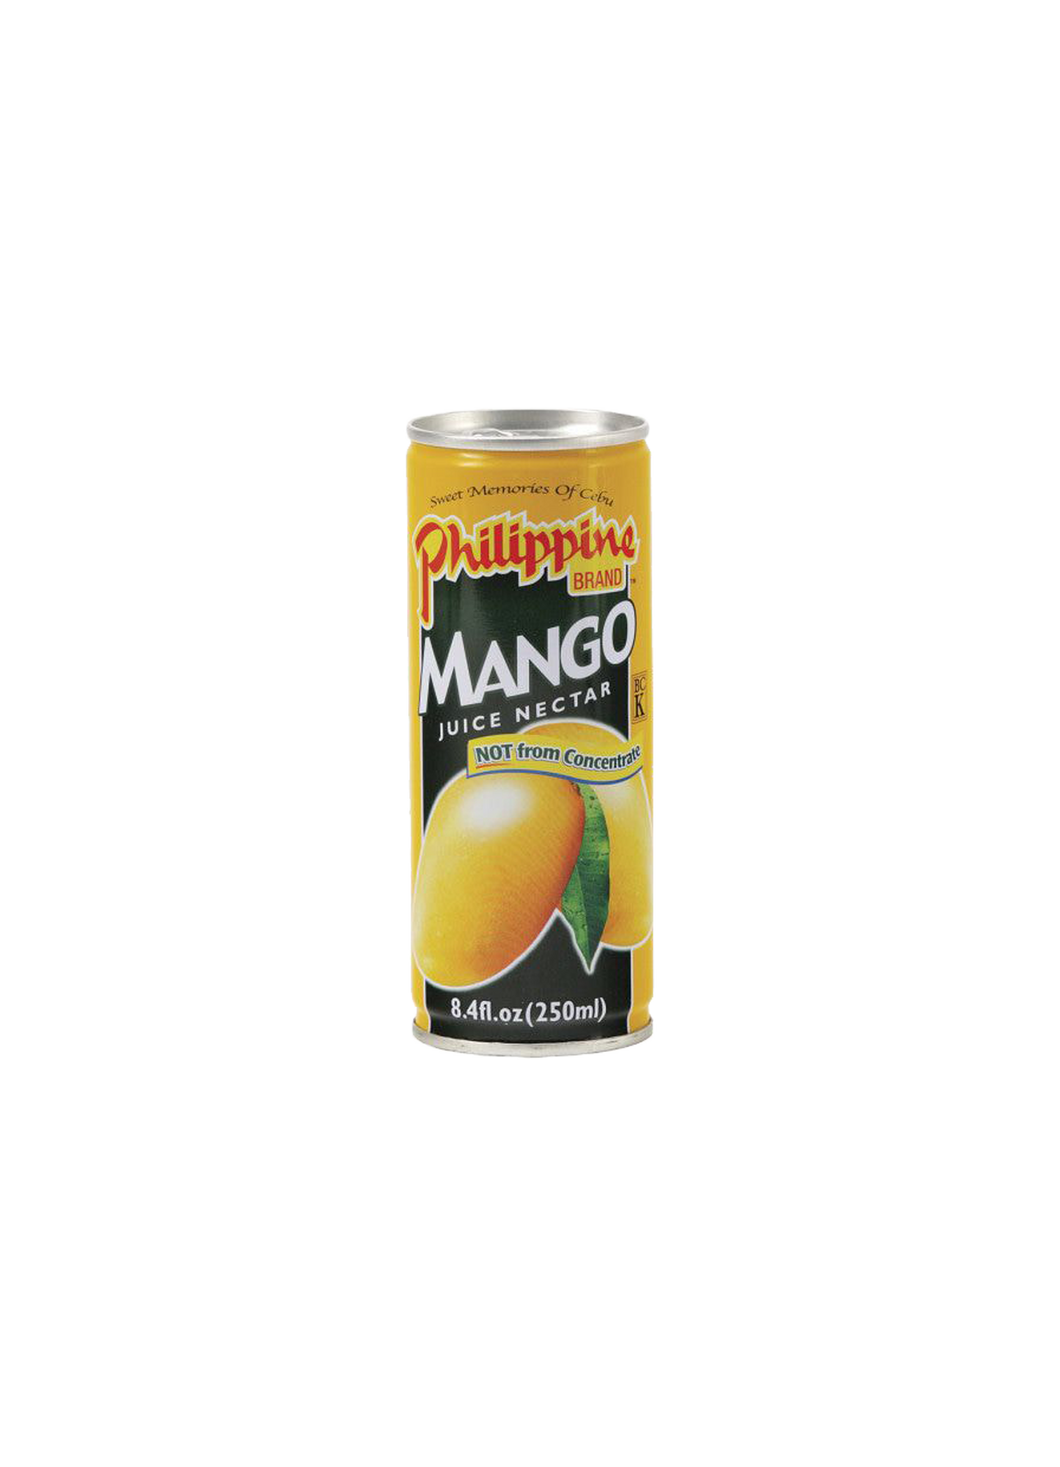 Philippine Brand Mango Juice Nectar 250ml